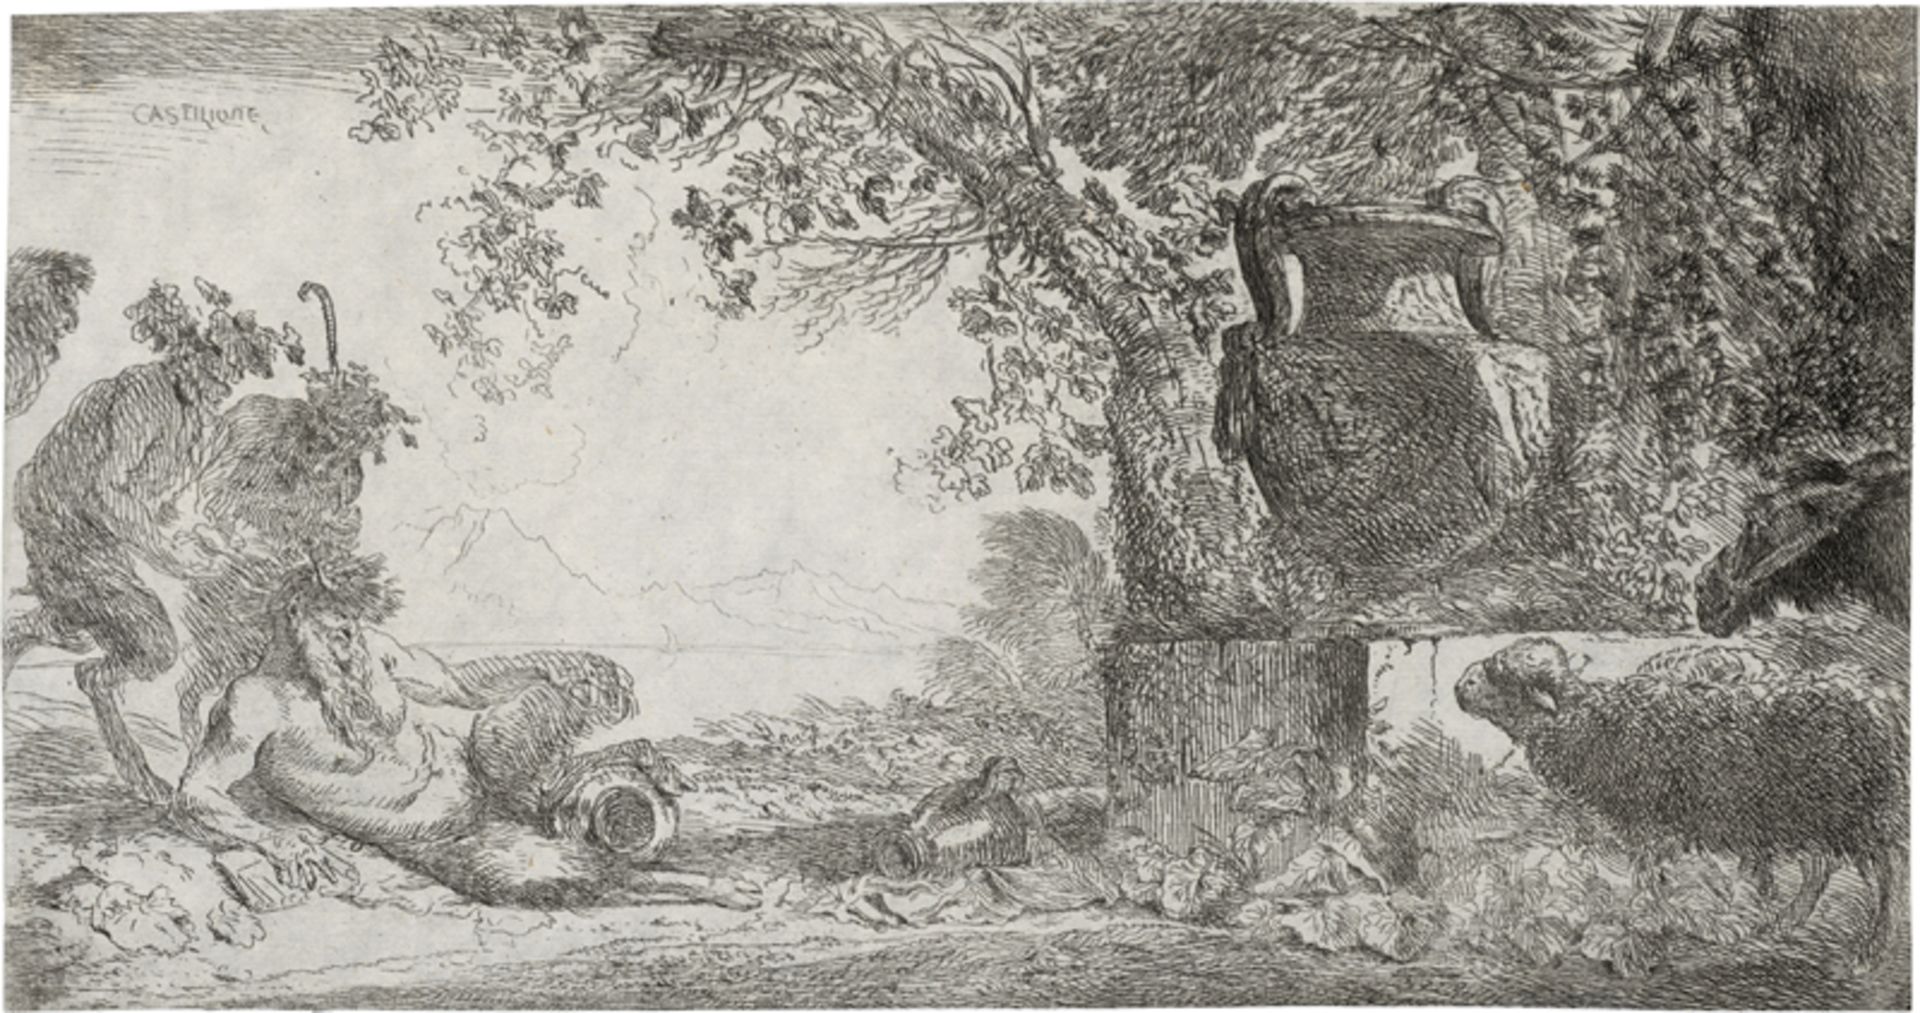 Castiglione, Giovanni Benedetto: Pan vor einer Vase ruhend